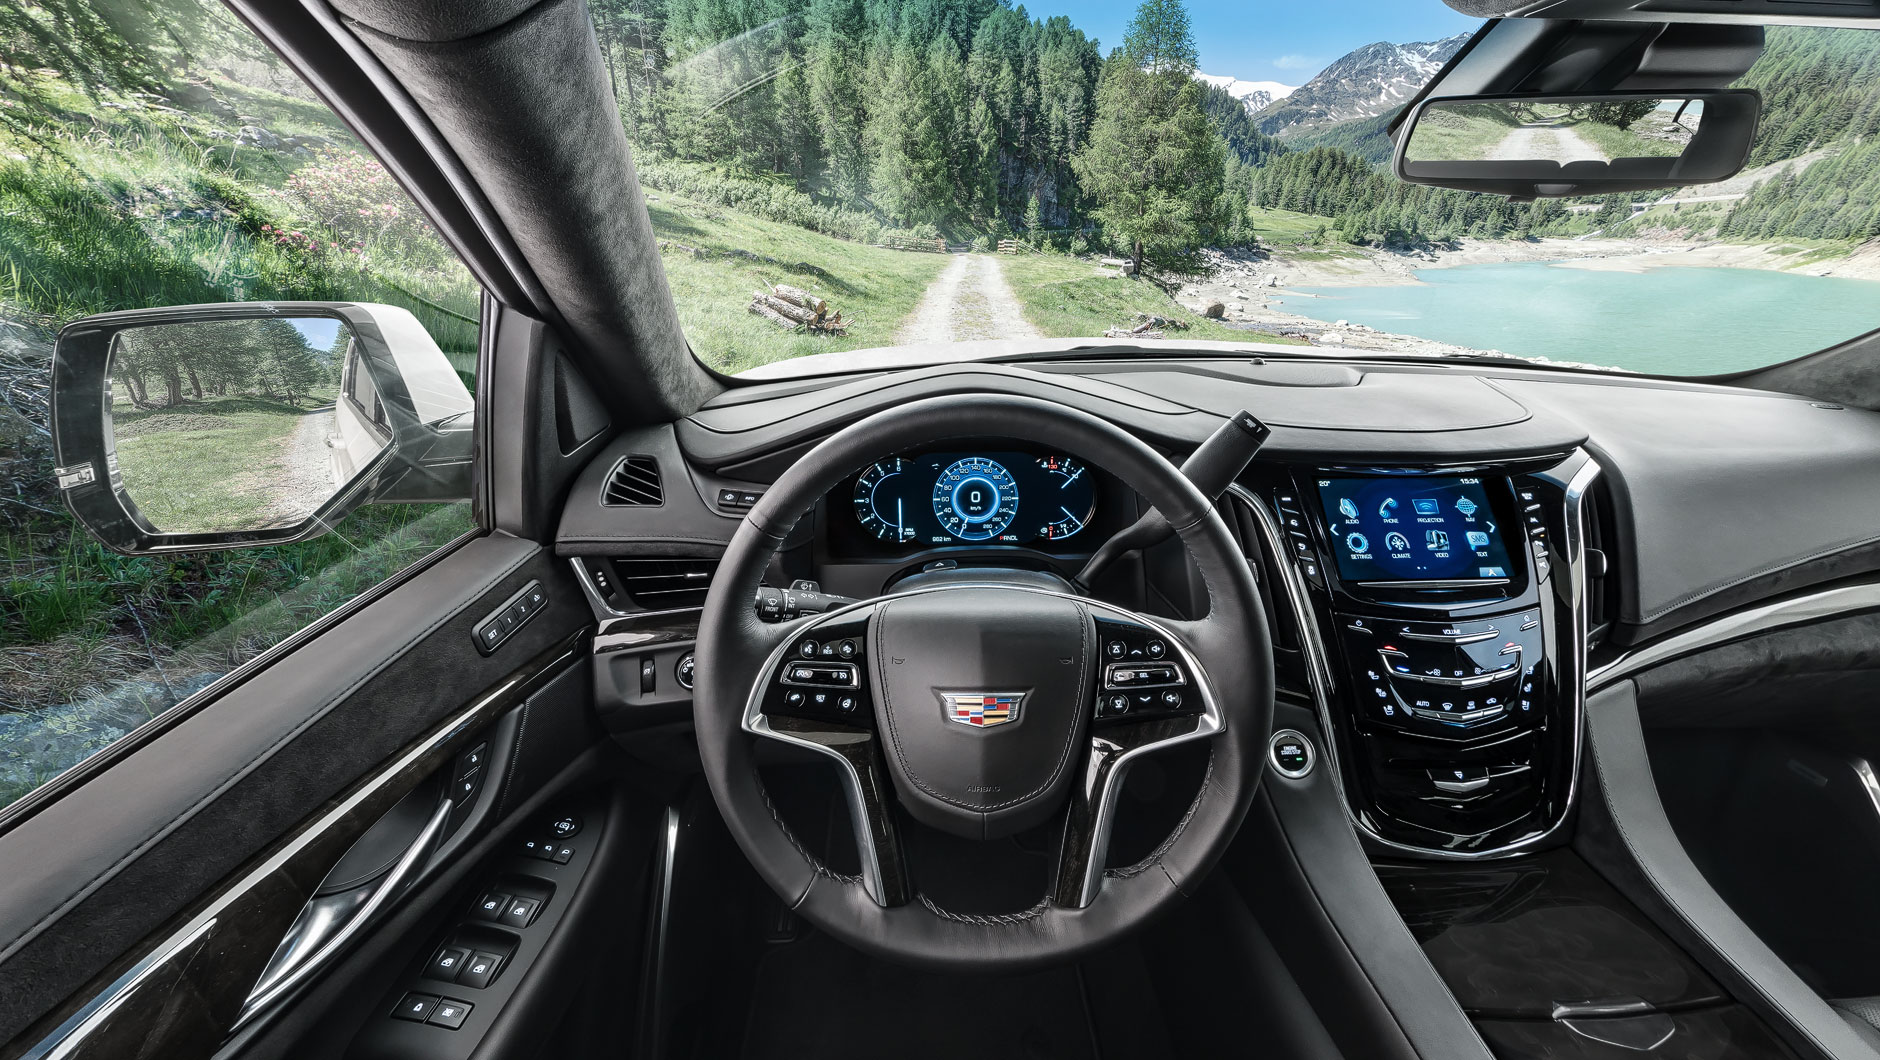 360-Grad-Bilder vom Interior verschiedener Fahrzeuge (Audi, Mercedes, Kia,  Cadillac und Chevrolet